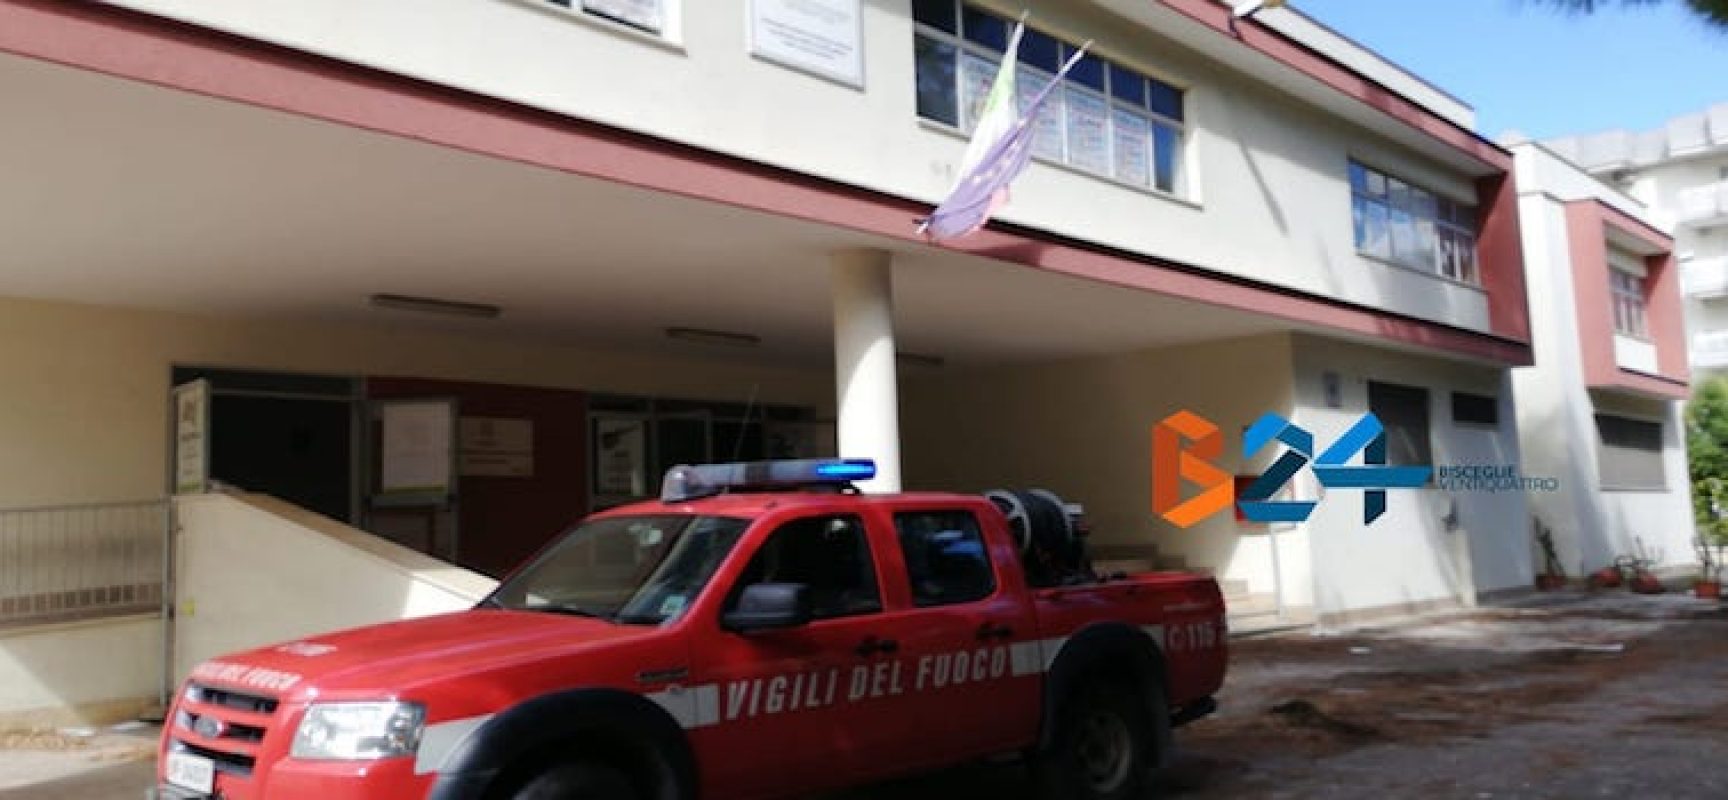 Incendio all’Istituto Superiore “Sergio Cosmai”, il secondo in due settimane